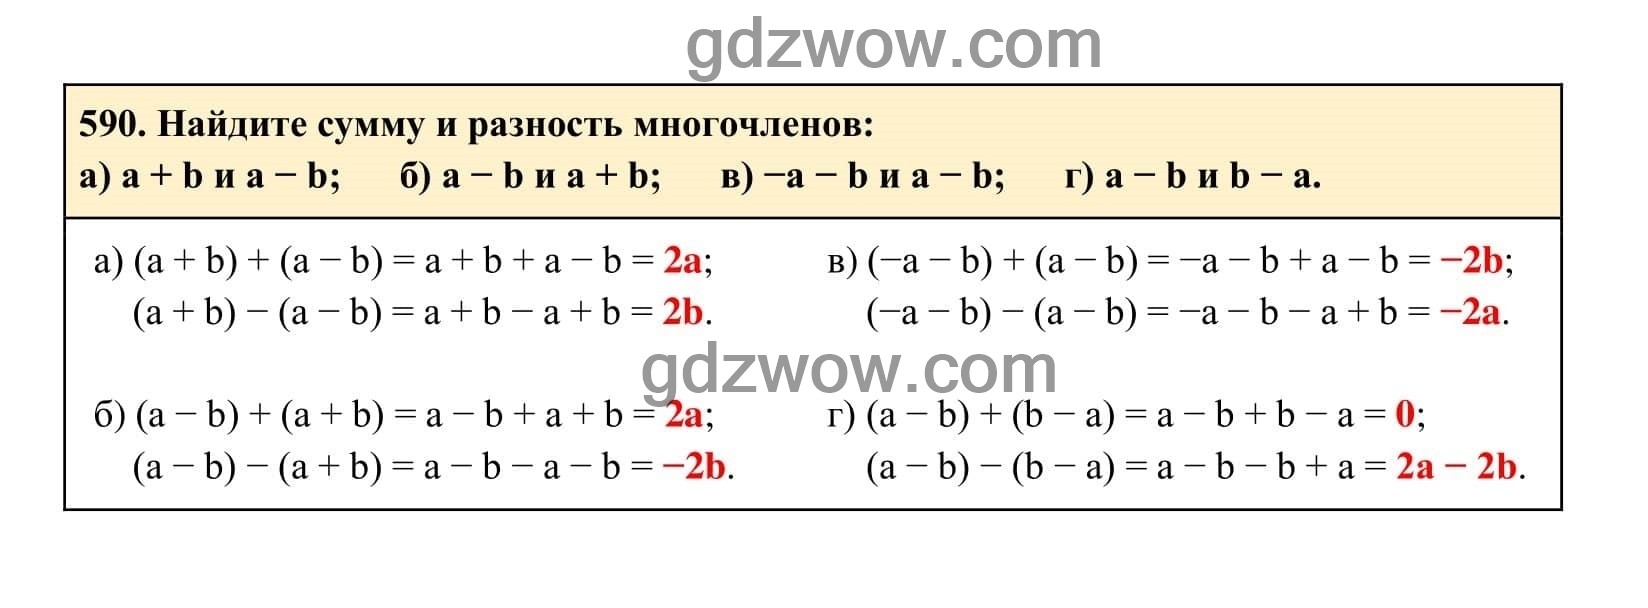 Упражнение 590 - ГДЗ по Алгебре 7 класс Учебник Макарычев (решебник) - GDZwow